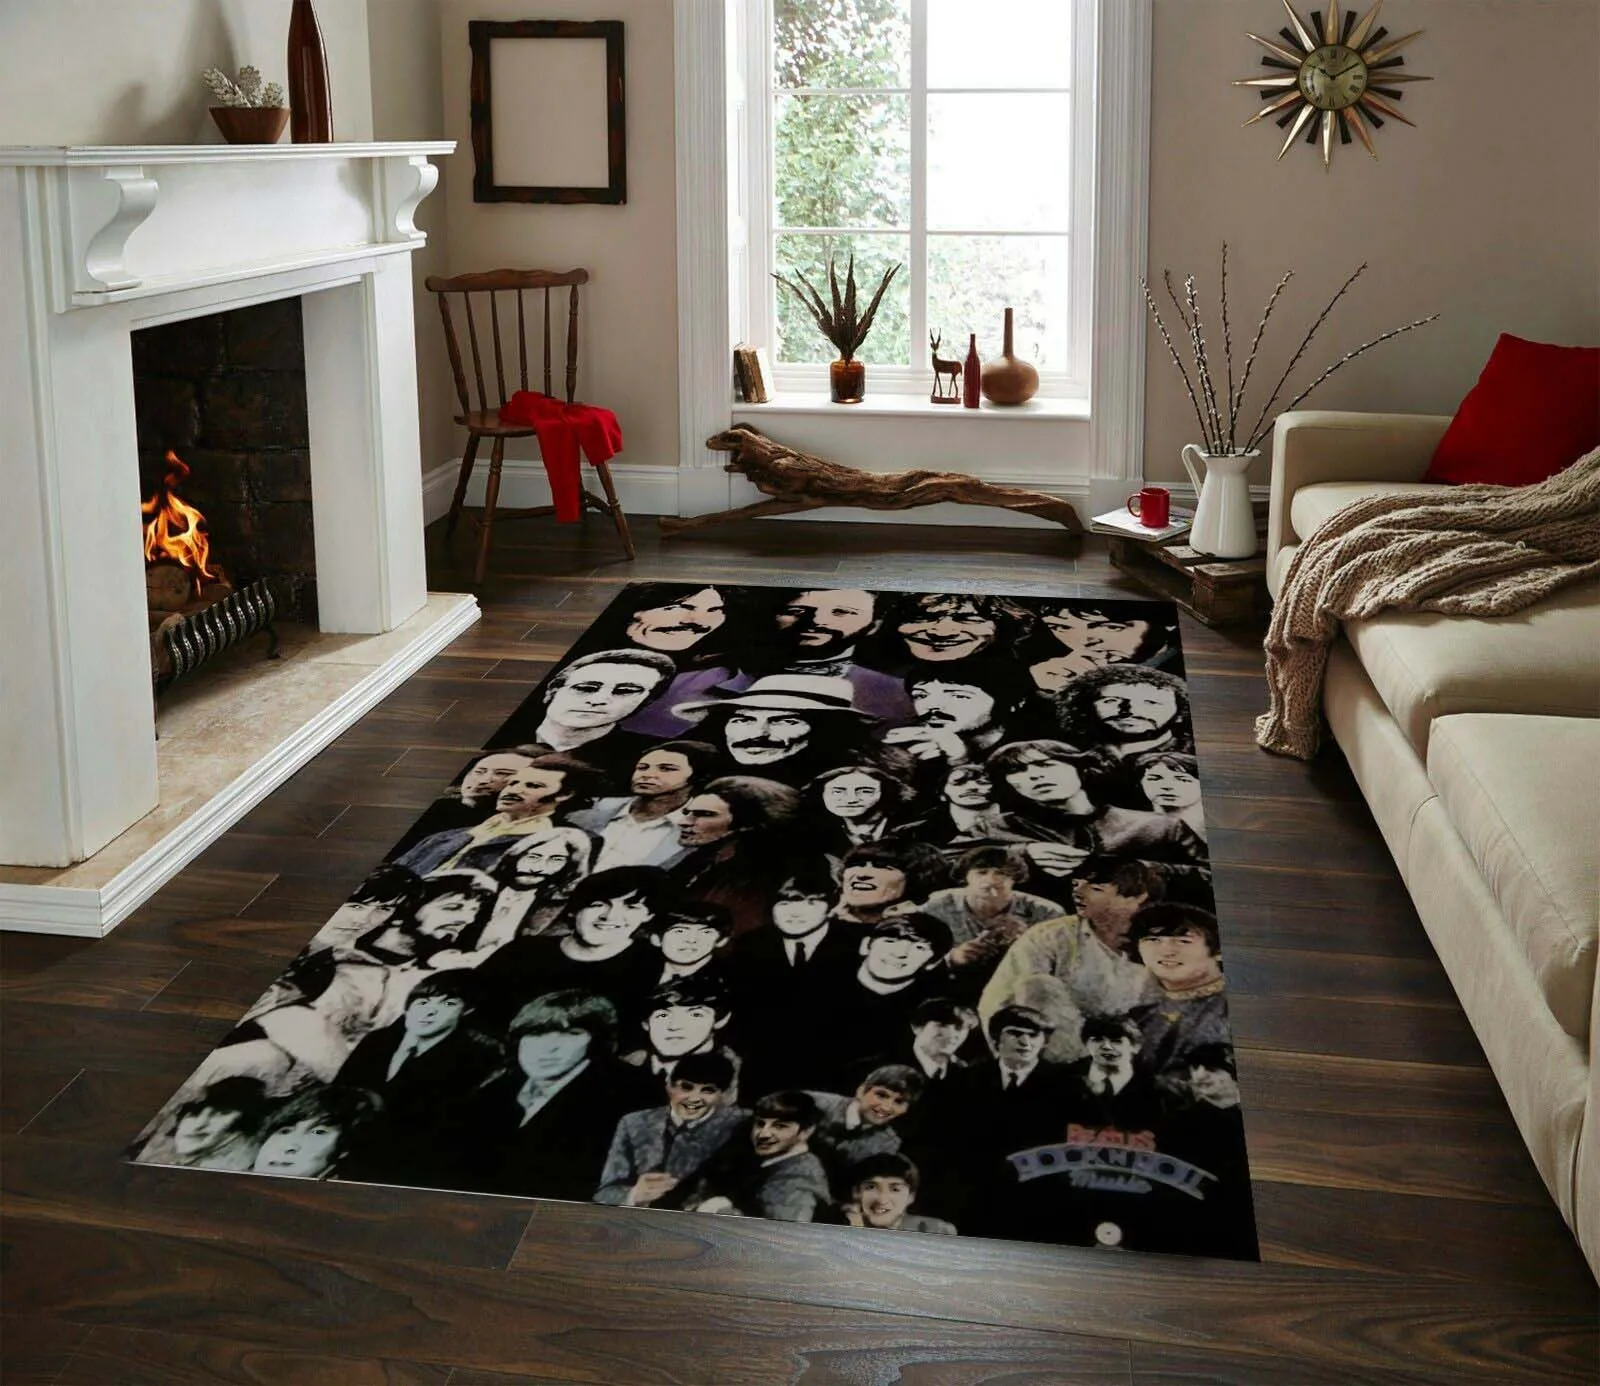 Beatles Rug, Modern Rug, Legends Carpet, Living Room Rug, Home Decor Carpets, Decor For Boy Room, Trends Rug